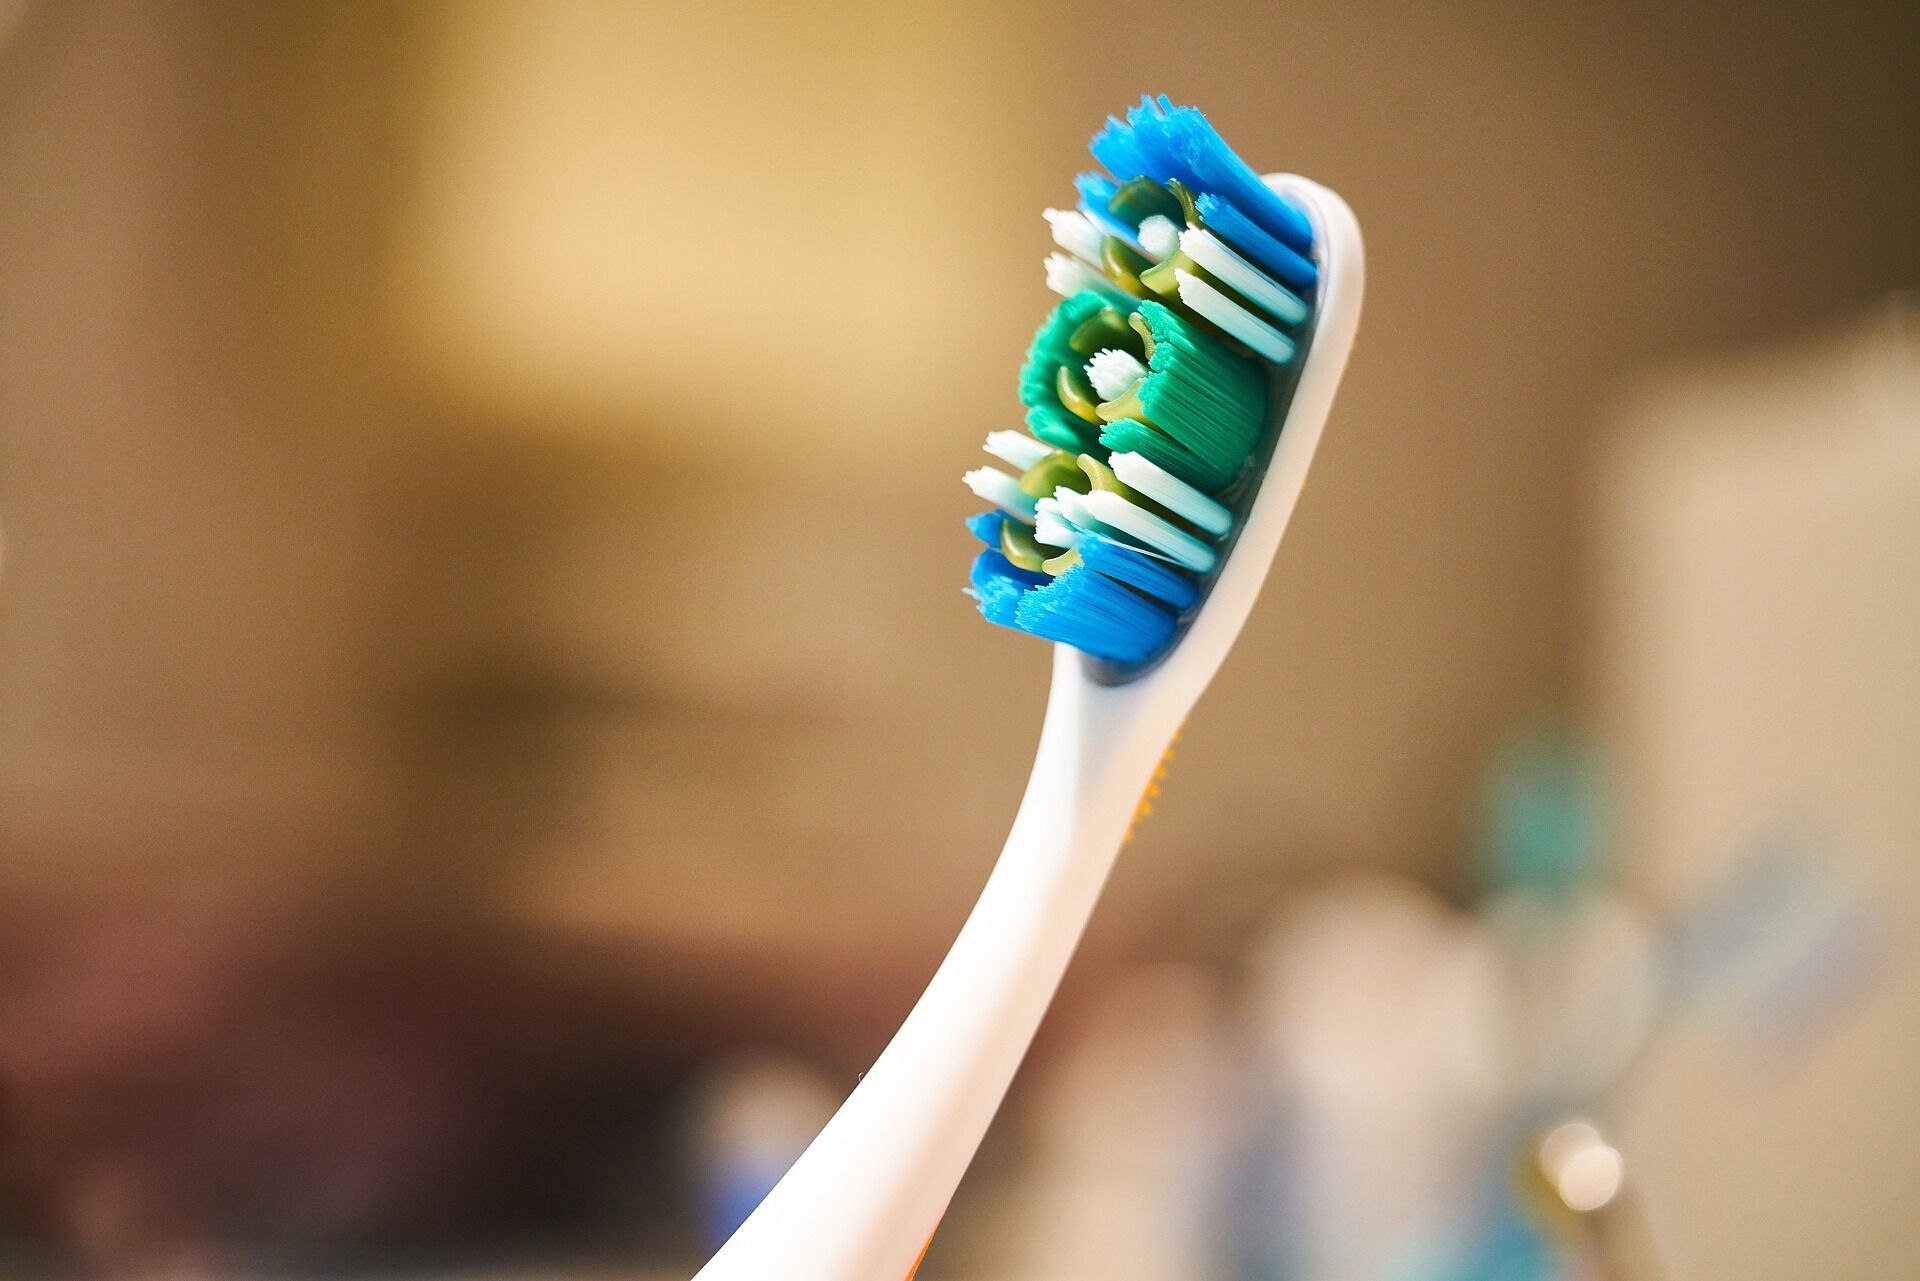 Стоматолог объяснила, почему зубную щетку нельзя оставлять в ванной комнате